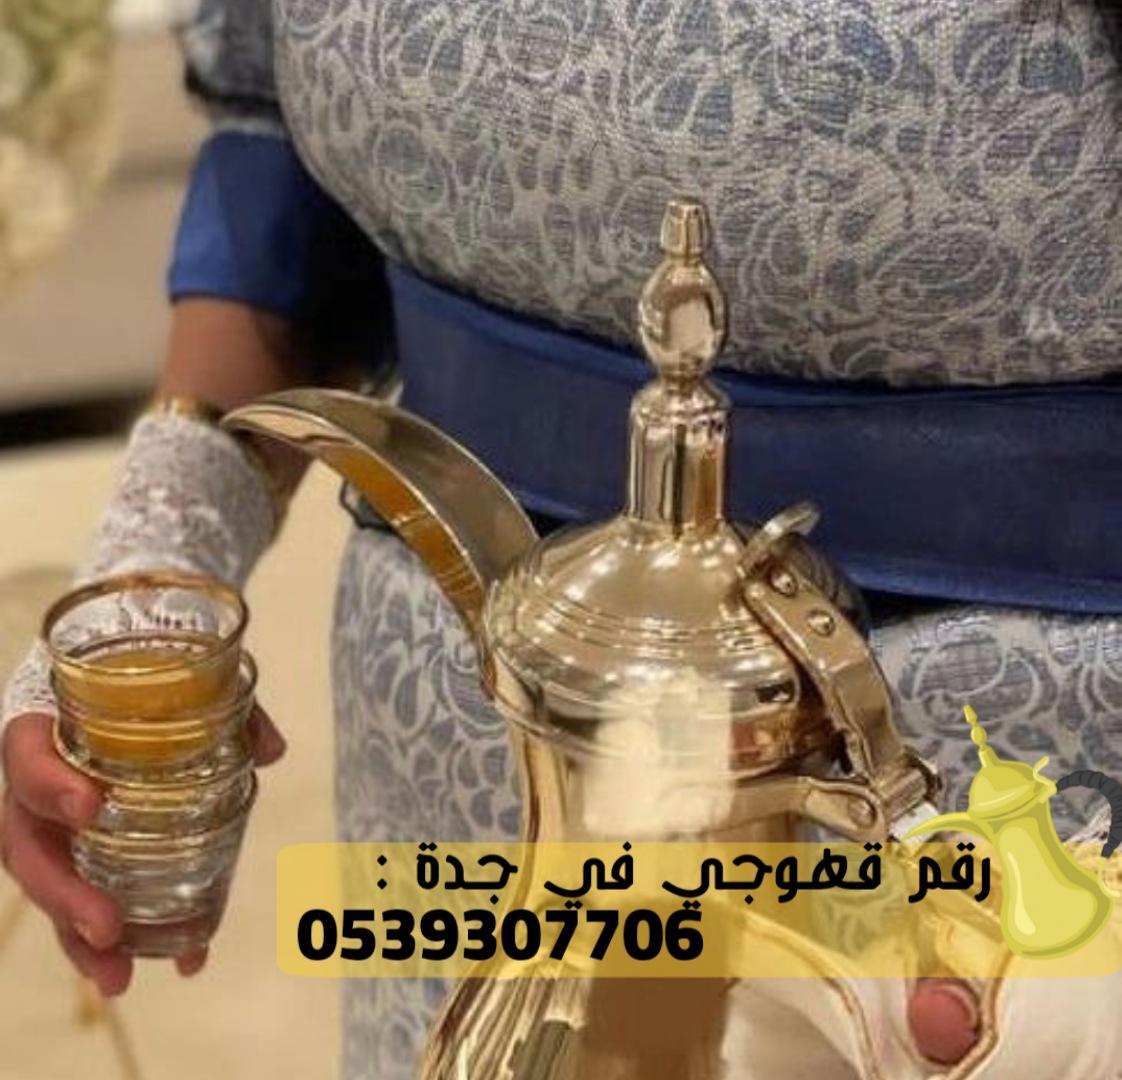 صبابات قهوة و صبابين قهوه في جدة,0539307706 347533536